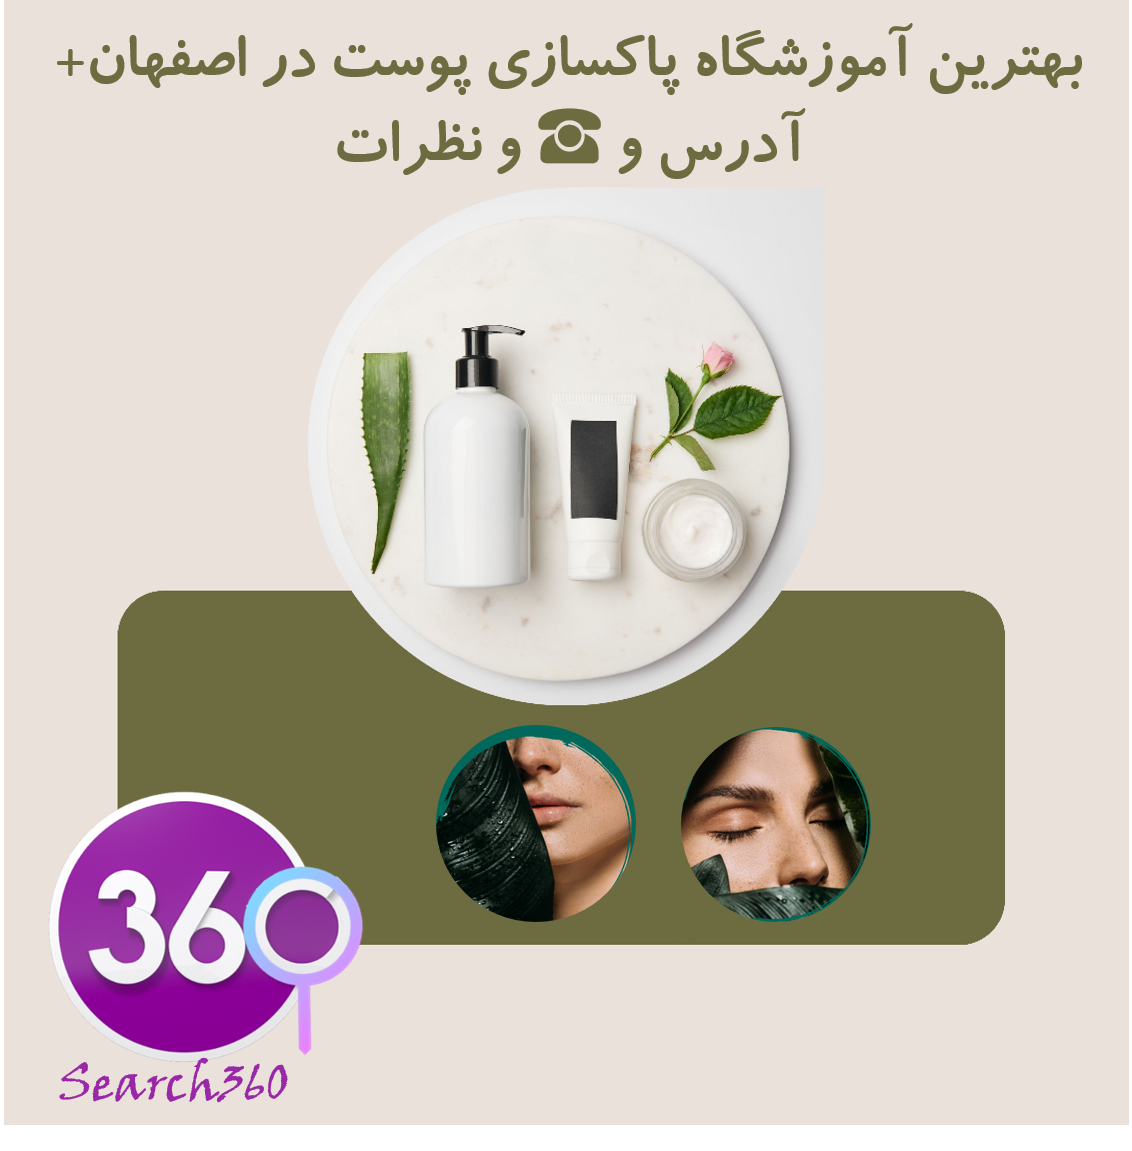 بهترین آموزشگاه پاکسازی پوست (فیشیال) در اصفهان با تلفن☎️و نظرات و آدرس